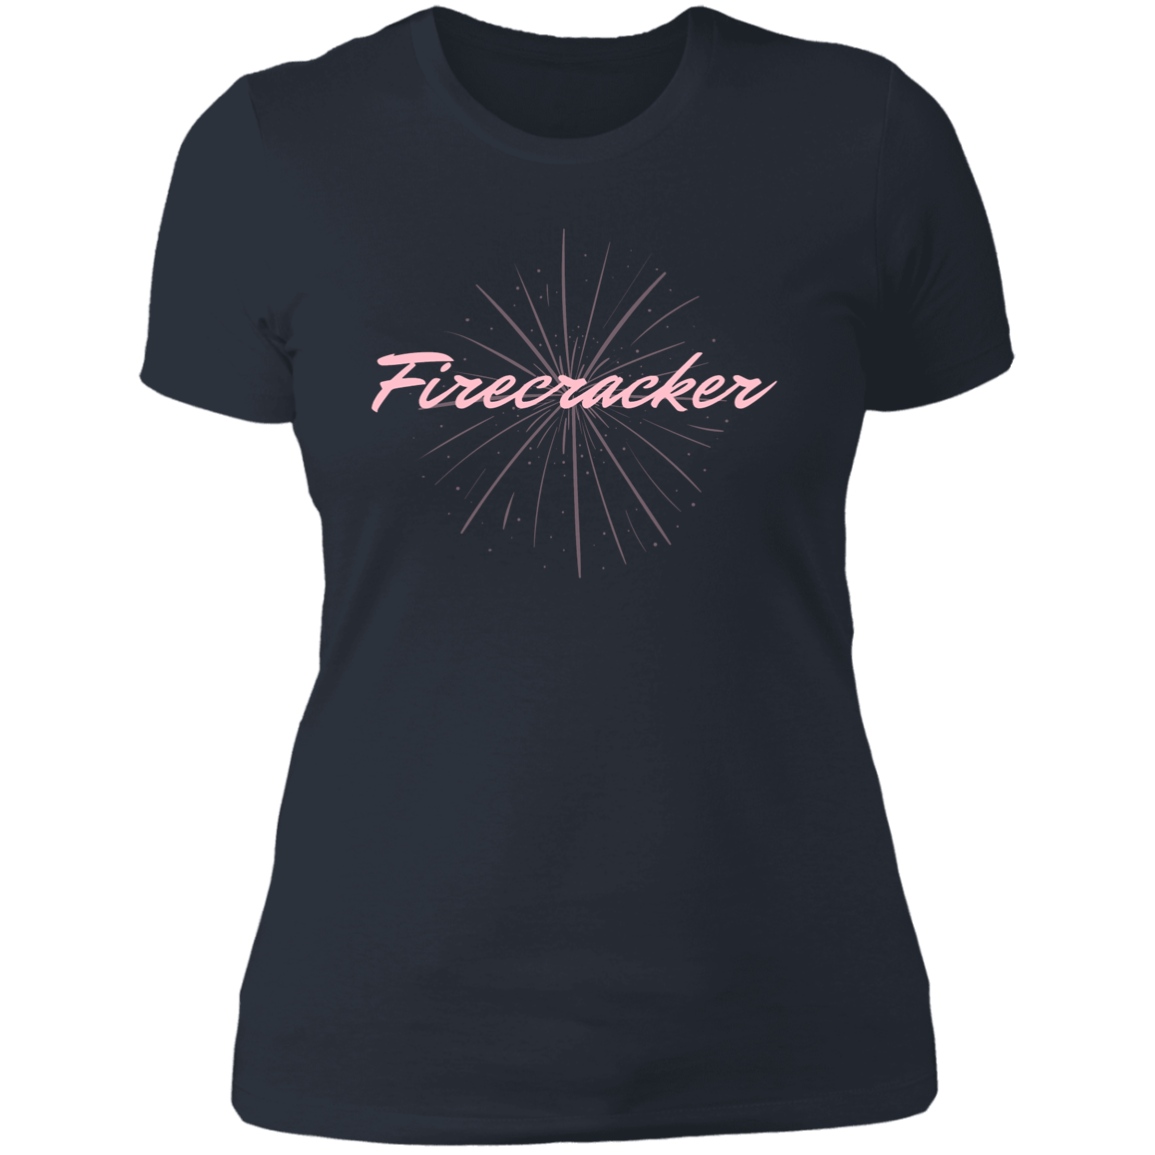 Firecracker Ladies T-Shirt